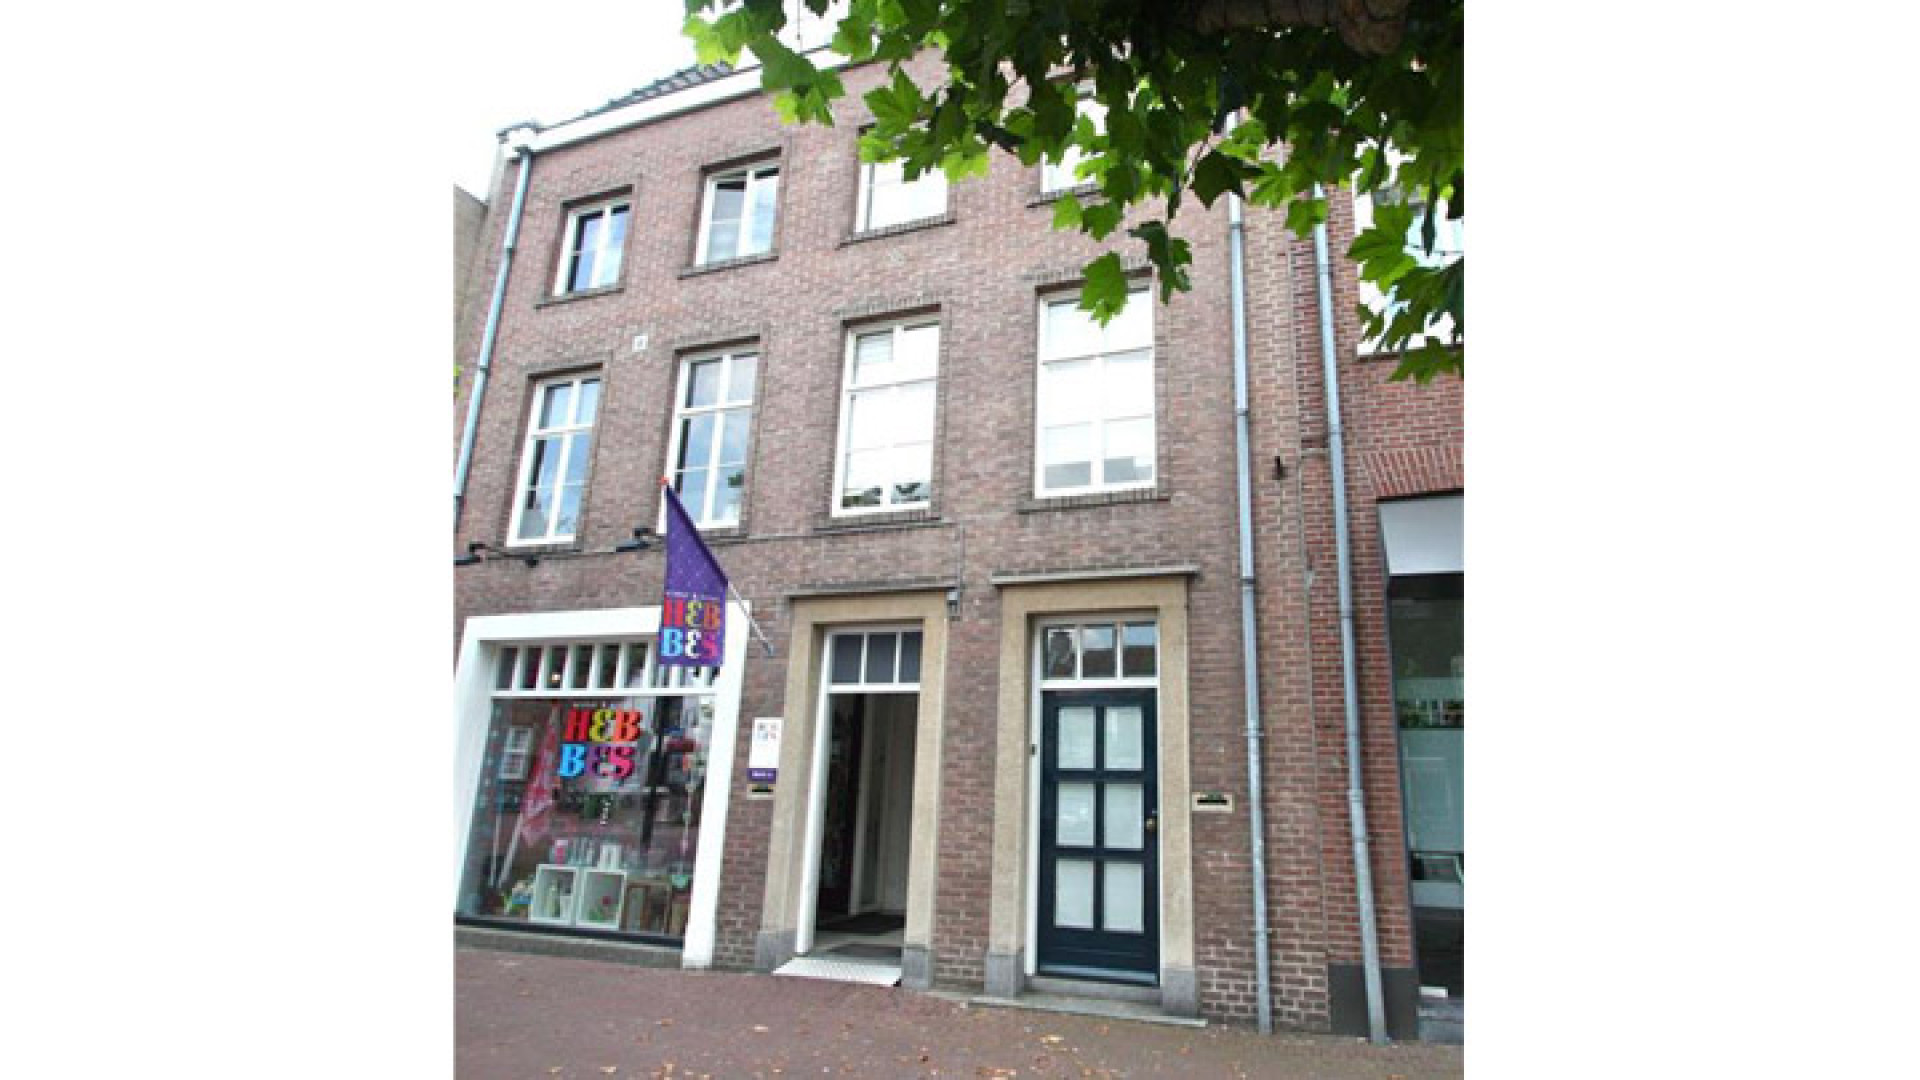 Geert Hoes verlaagt vraagprijs van zijn woning. Zie foto's 1